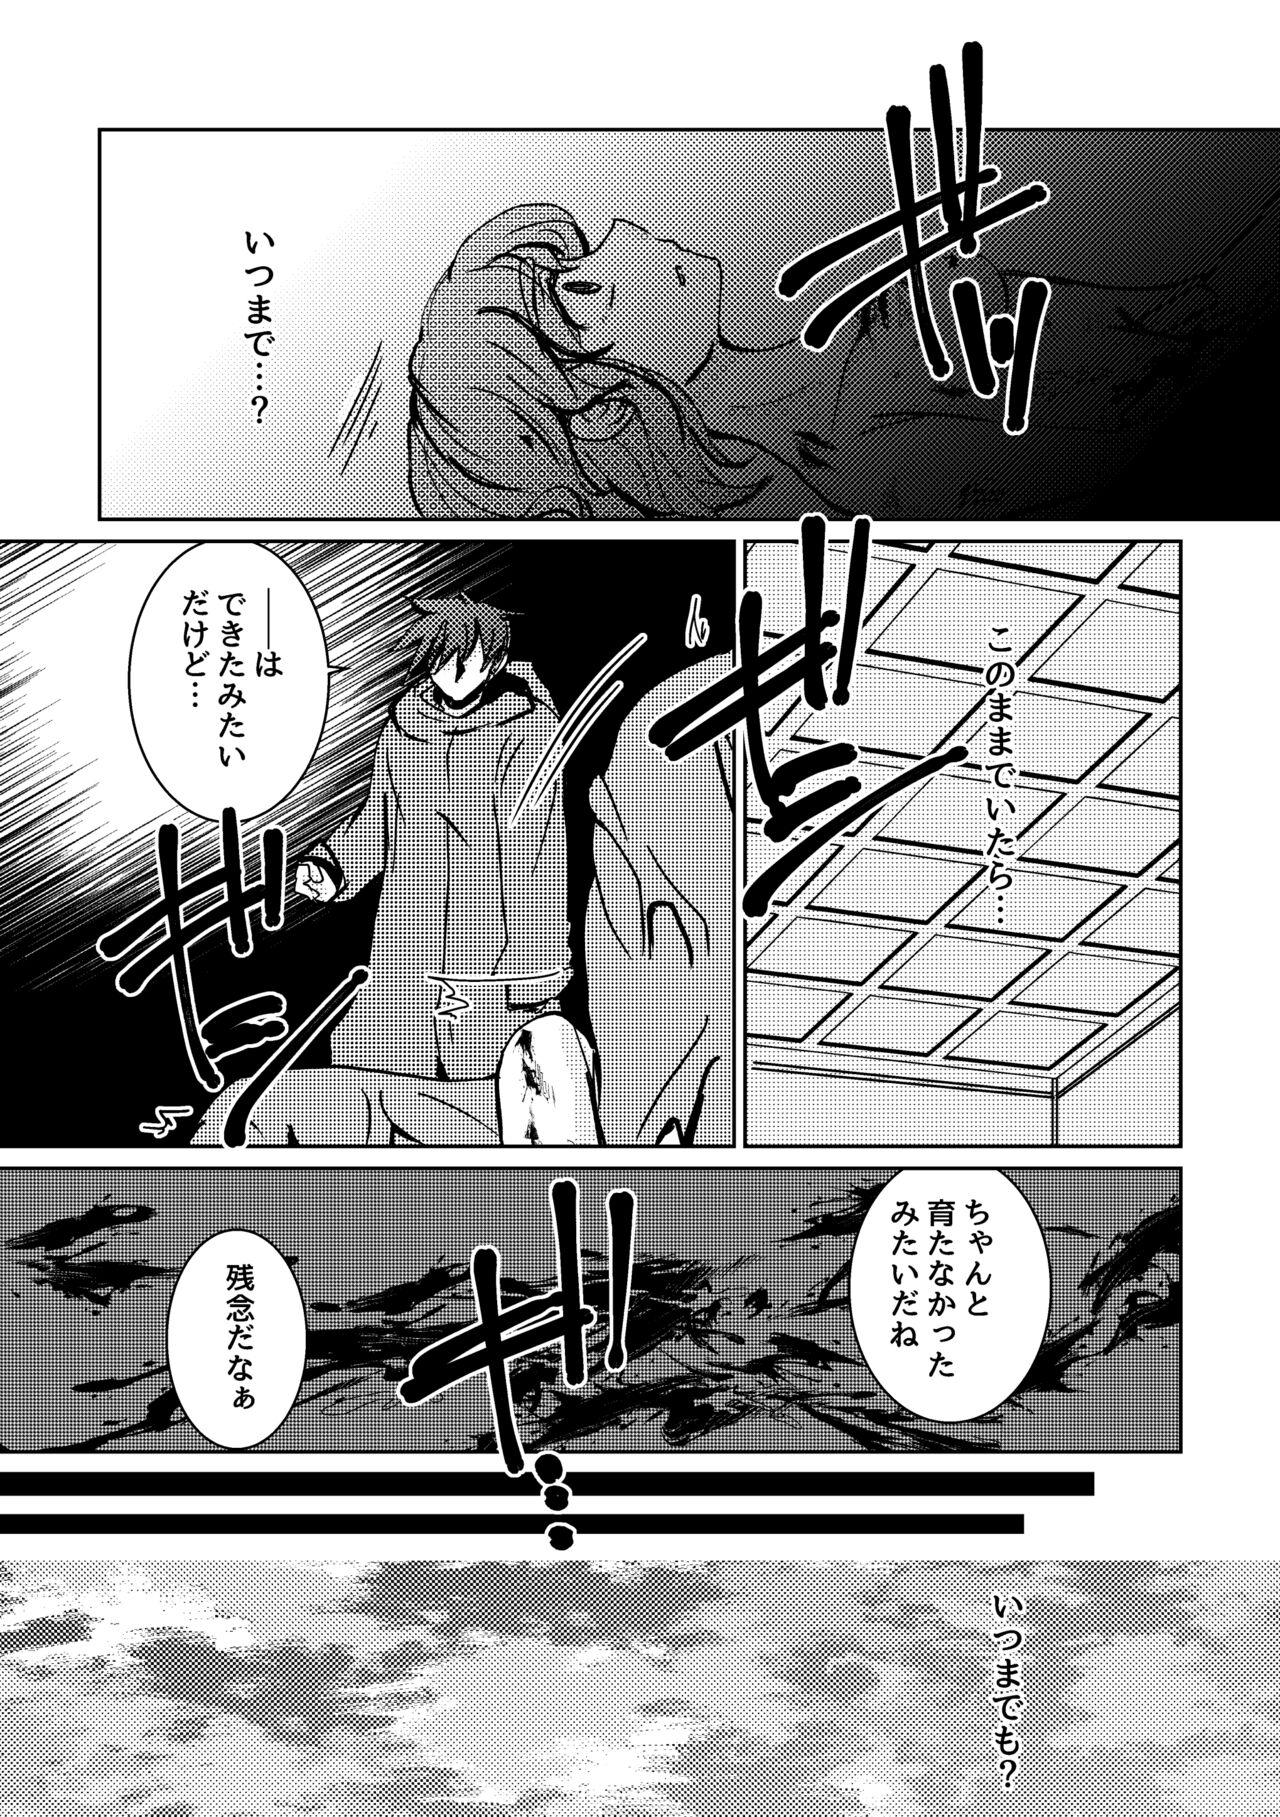 Naija Kareya Yoru no Hanaka Episode 3 Stroking - Page 9